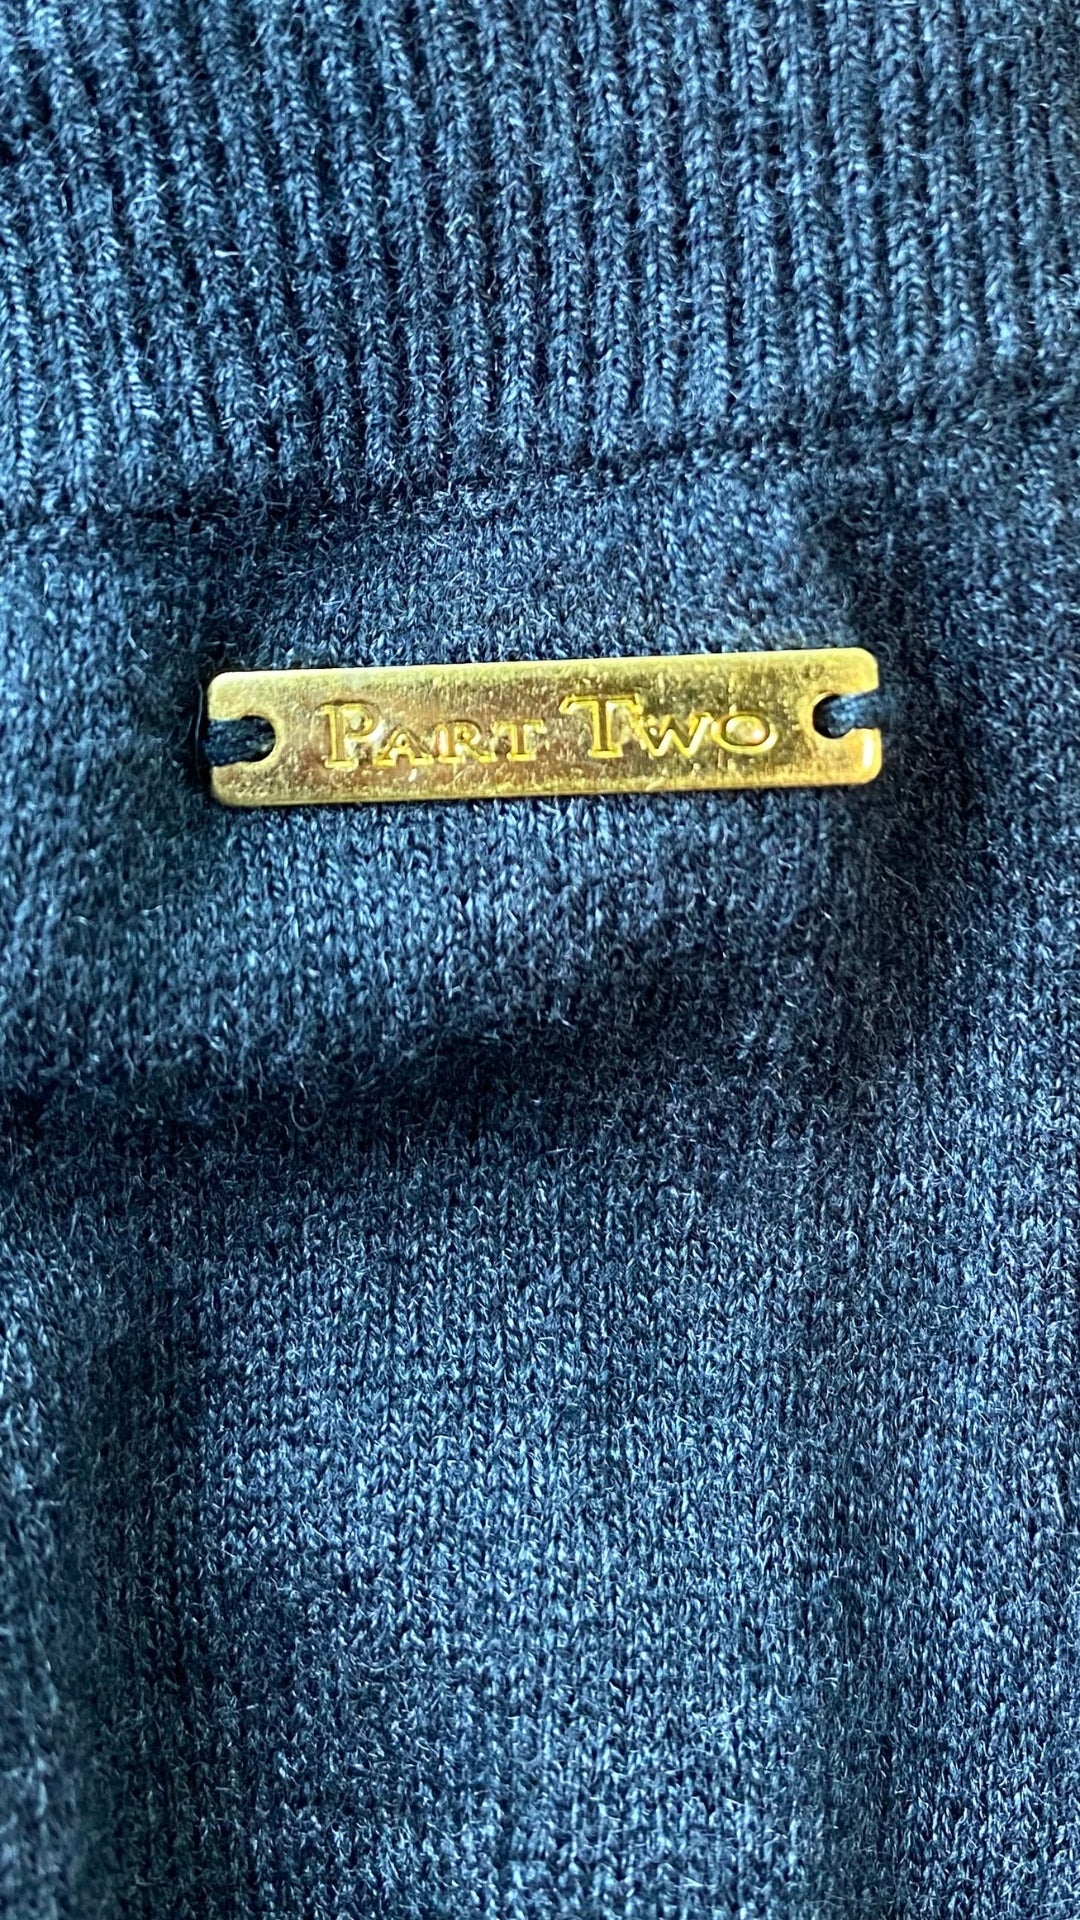 Jupe grise en tricot Part Two taille small. Vue d'un détail métallique portant le nom de la marque.